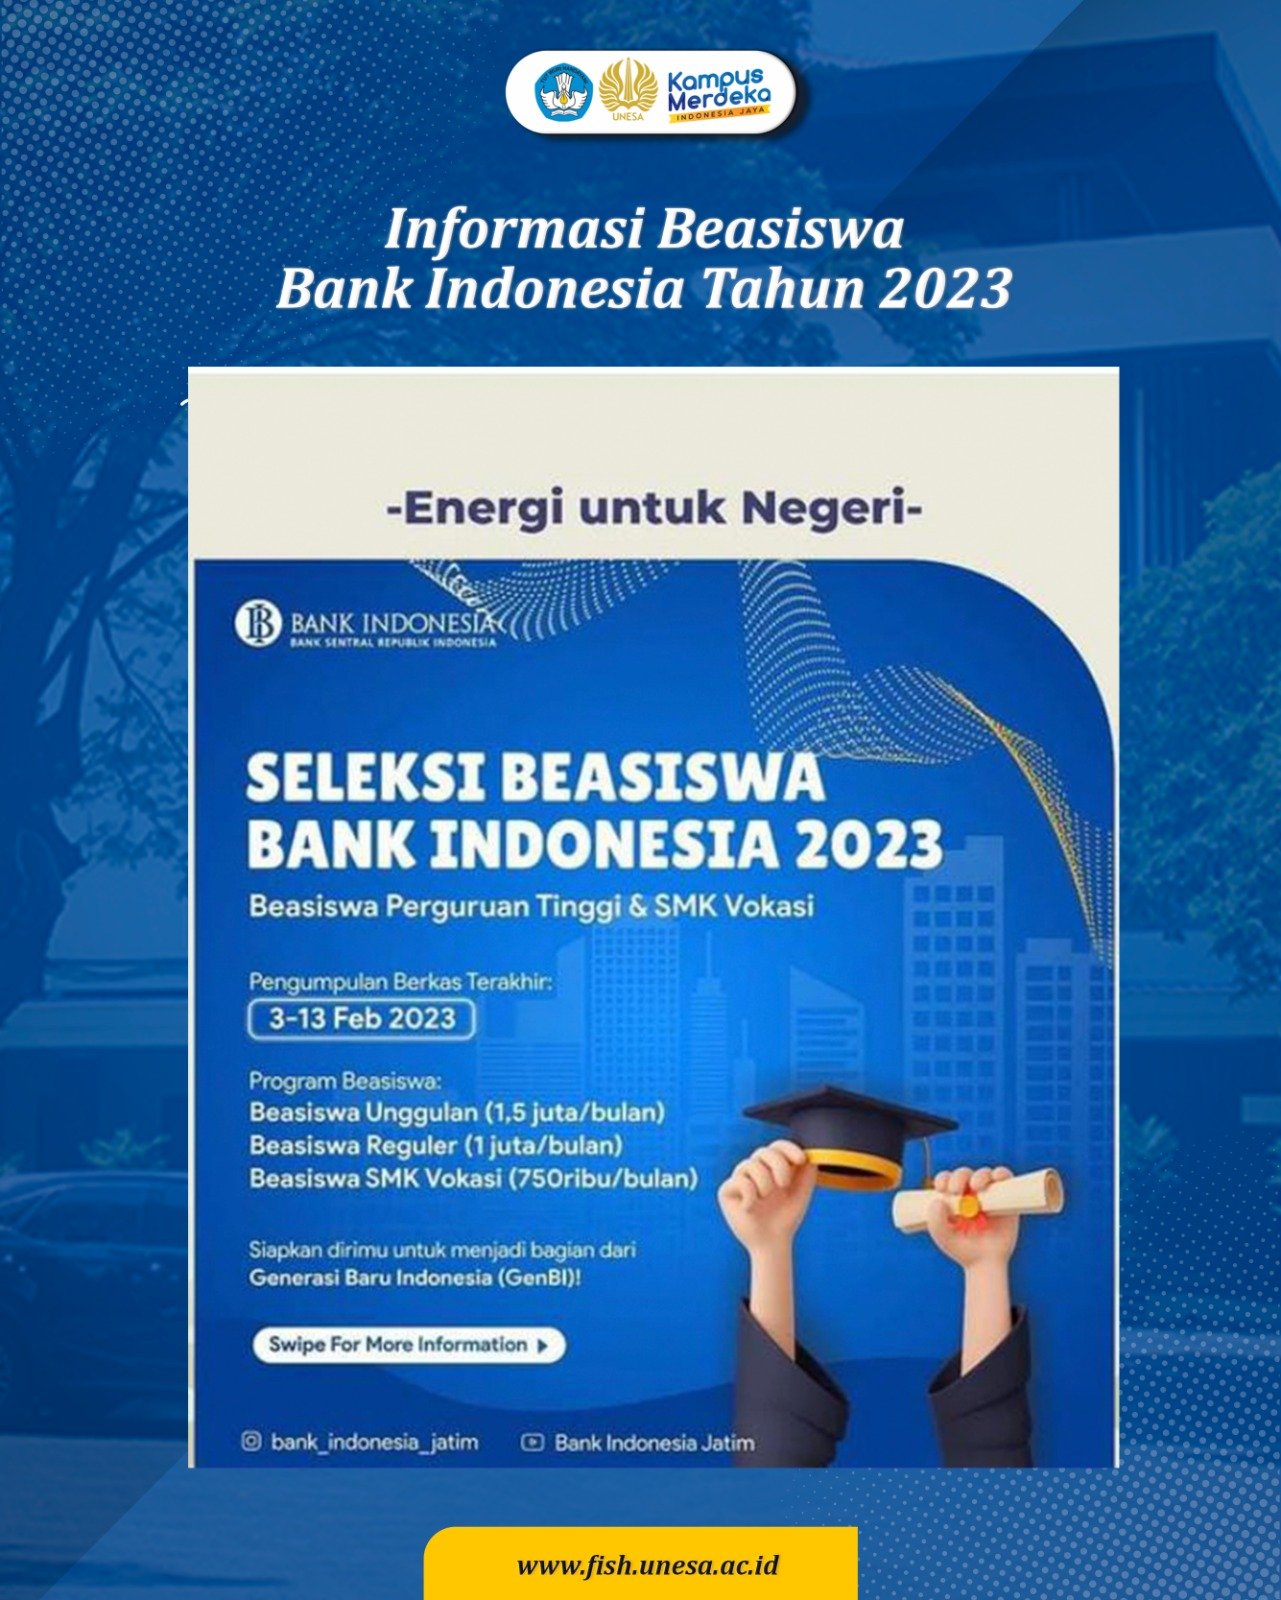 Pengumuman Dan Pendaftaran Program Beasiswa Bank Indonesia Tahun 2023